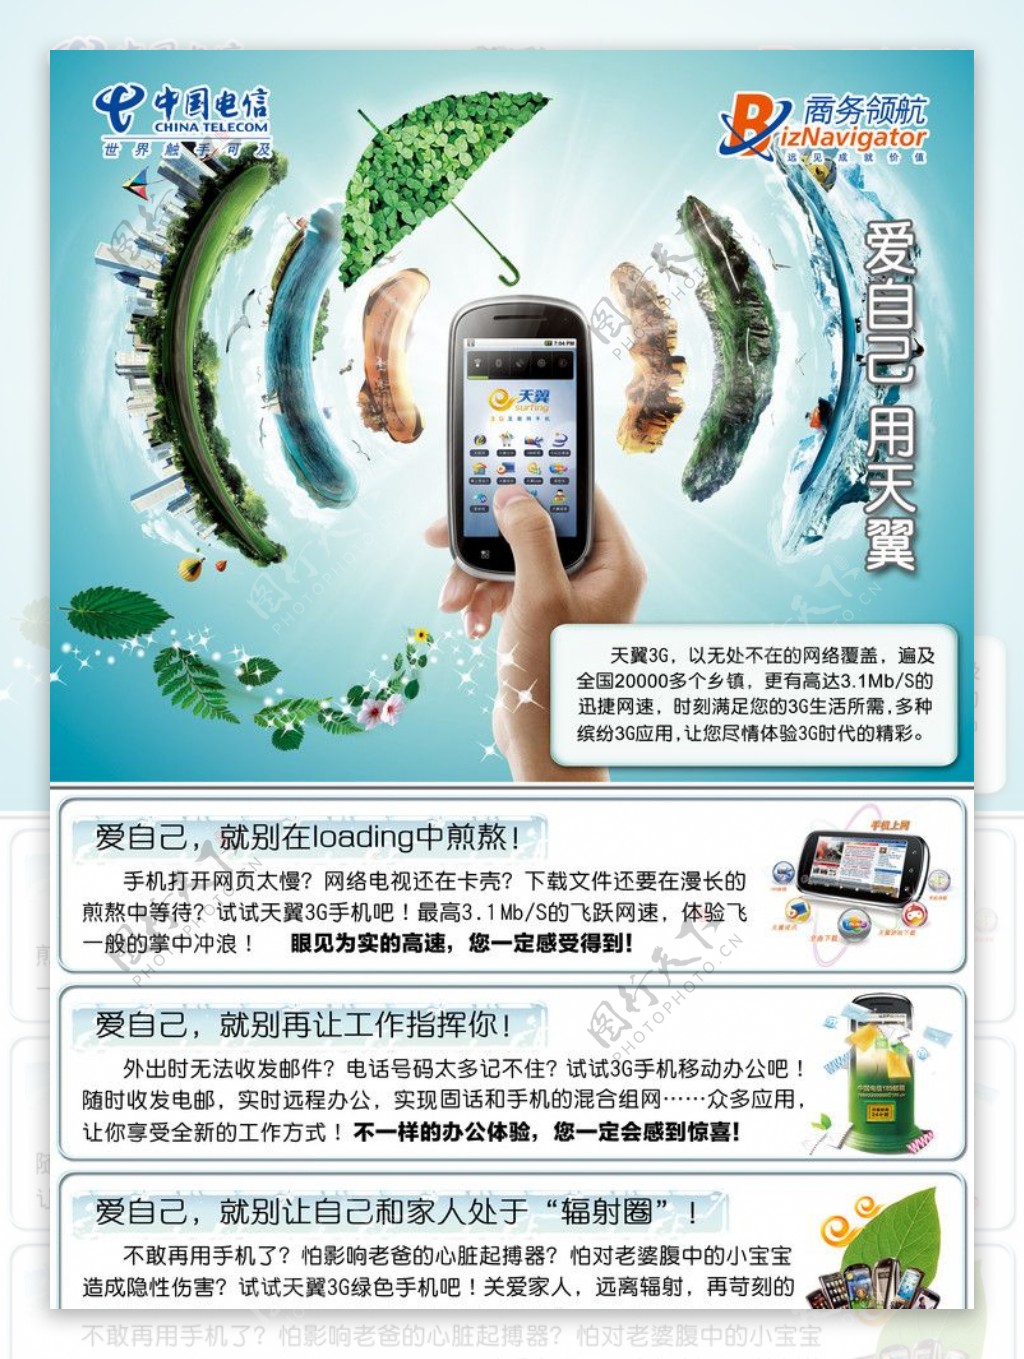 六合电信天翼品牌宣传DM彩页图片